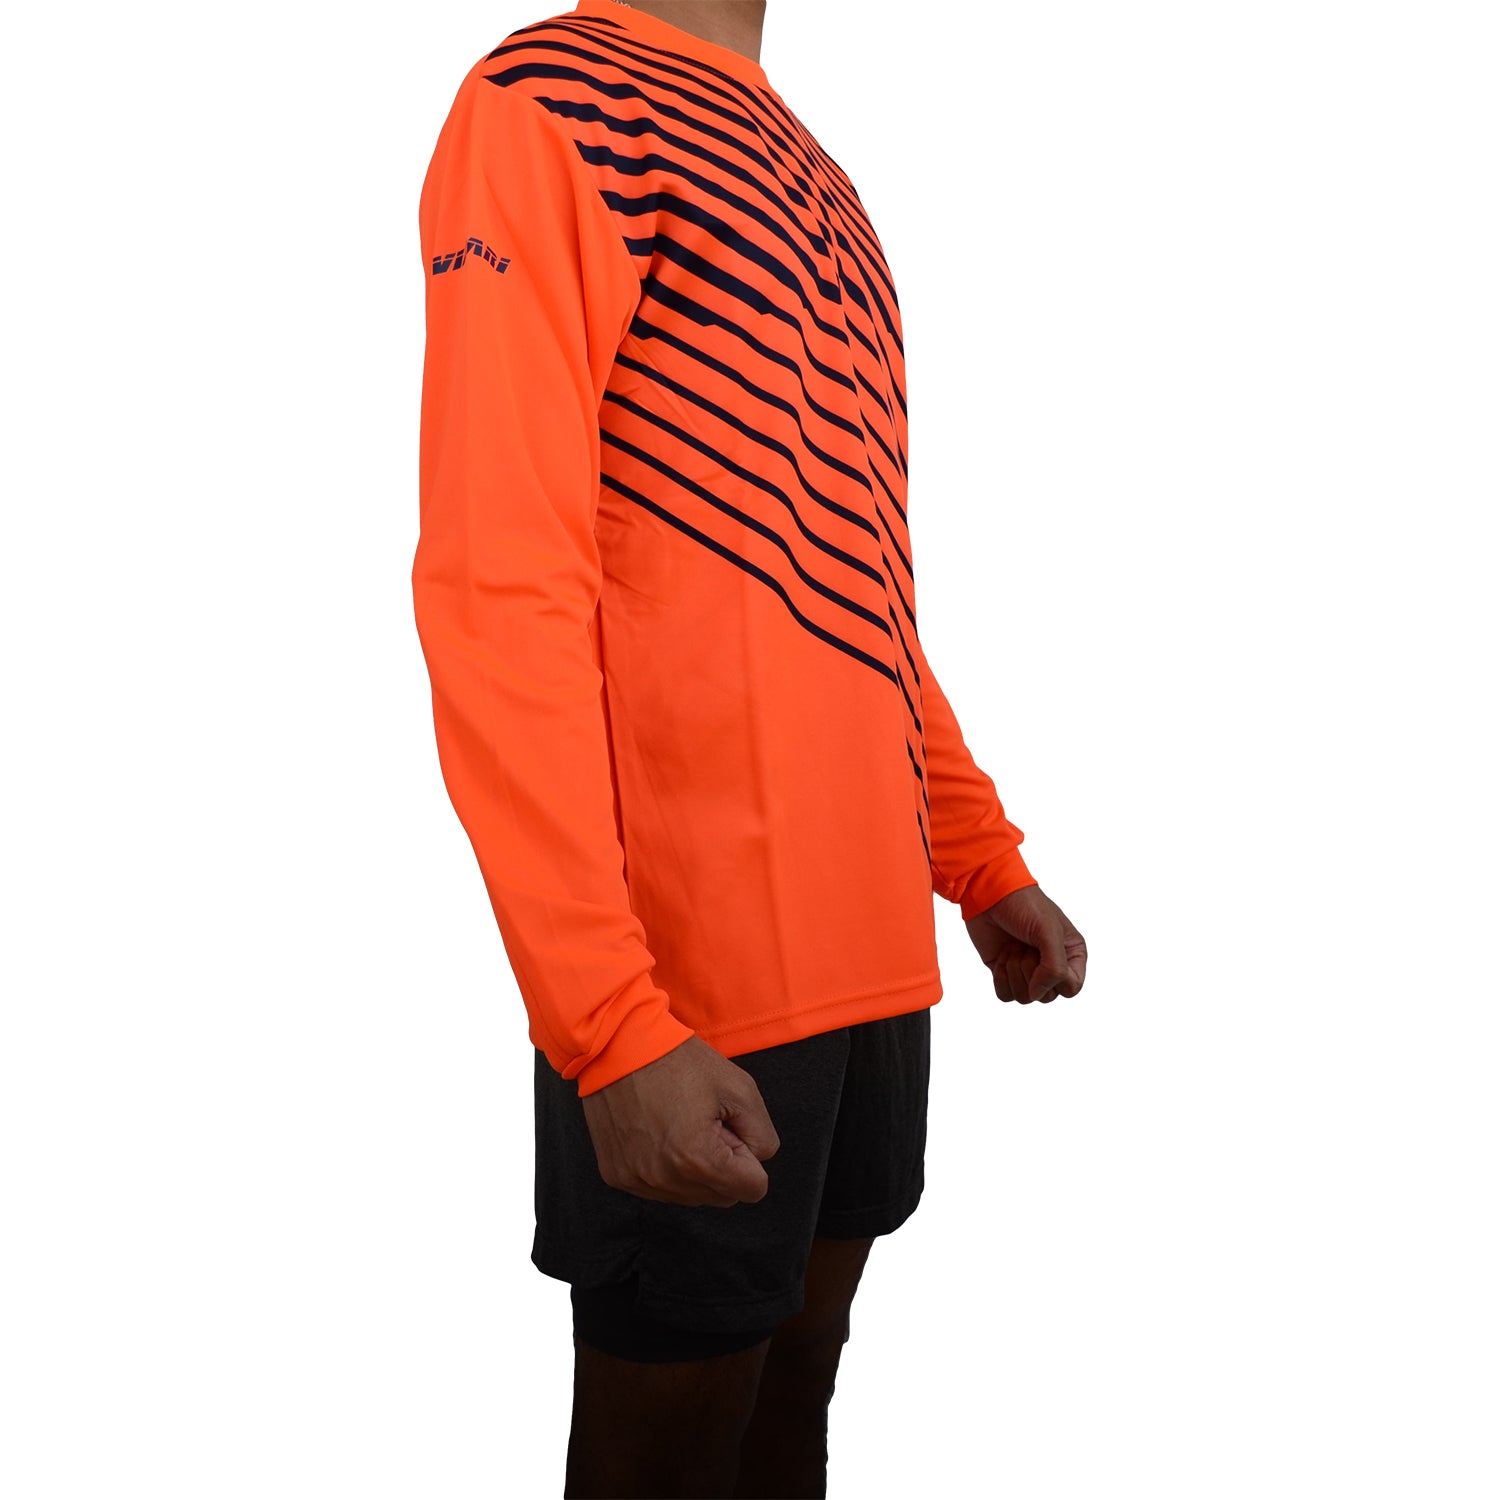 Arroyo Goalkeeping Jersey - Orange/Navy